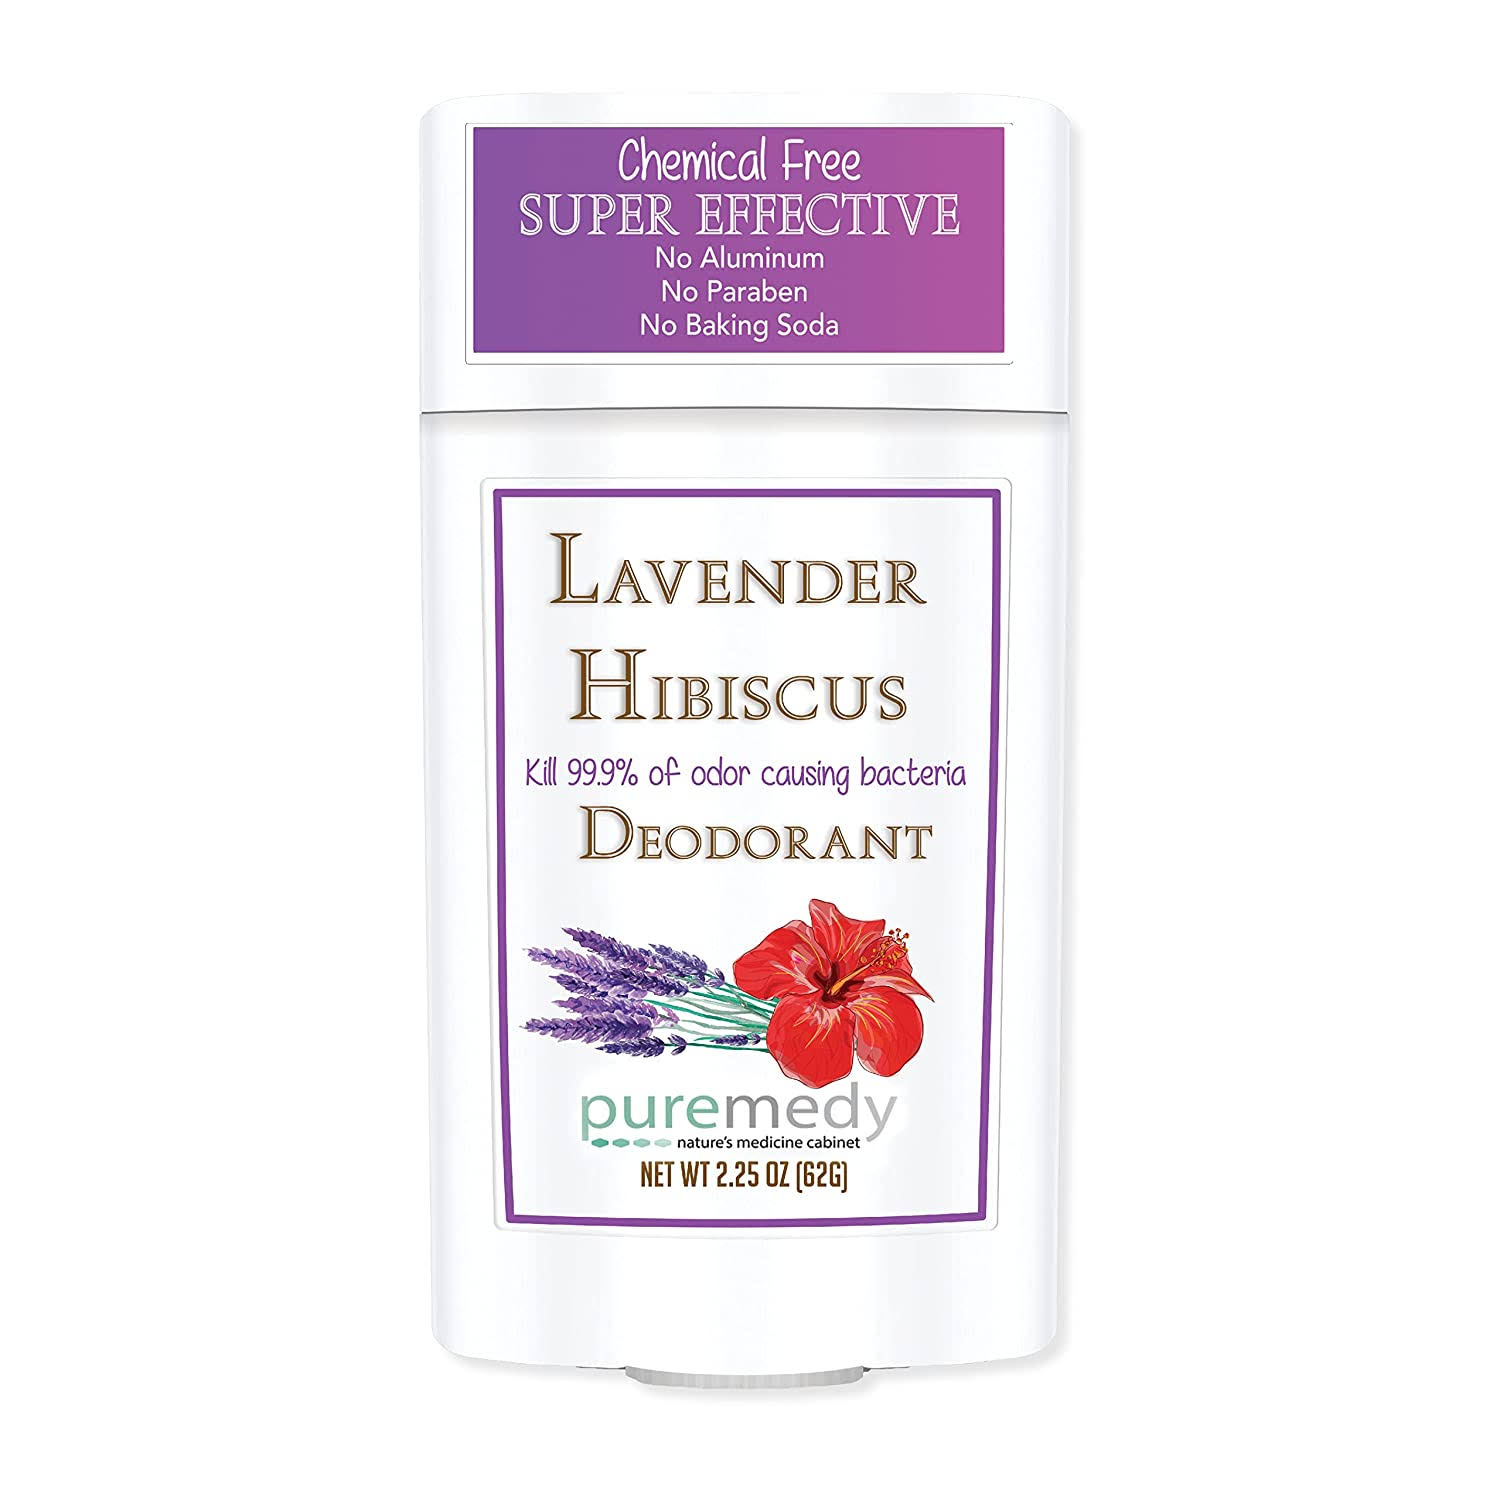 Puremedy Deodorant - Lavender Hibiscus - 2.25 oz (63 g)